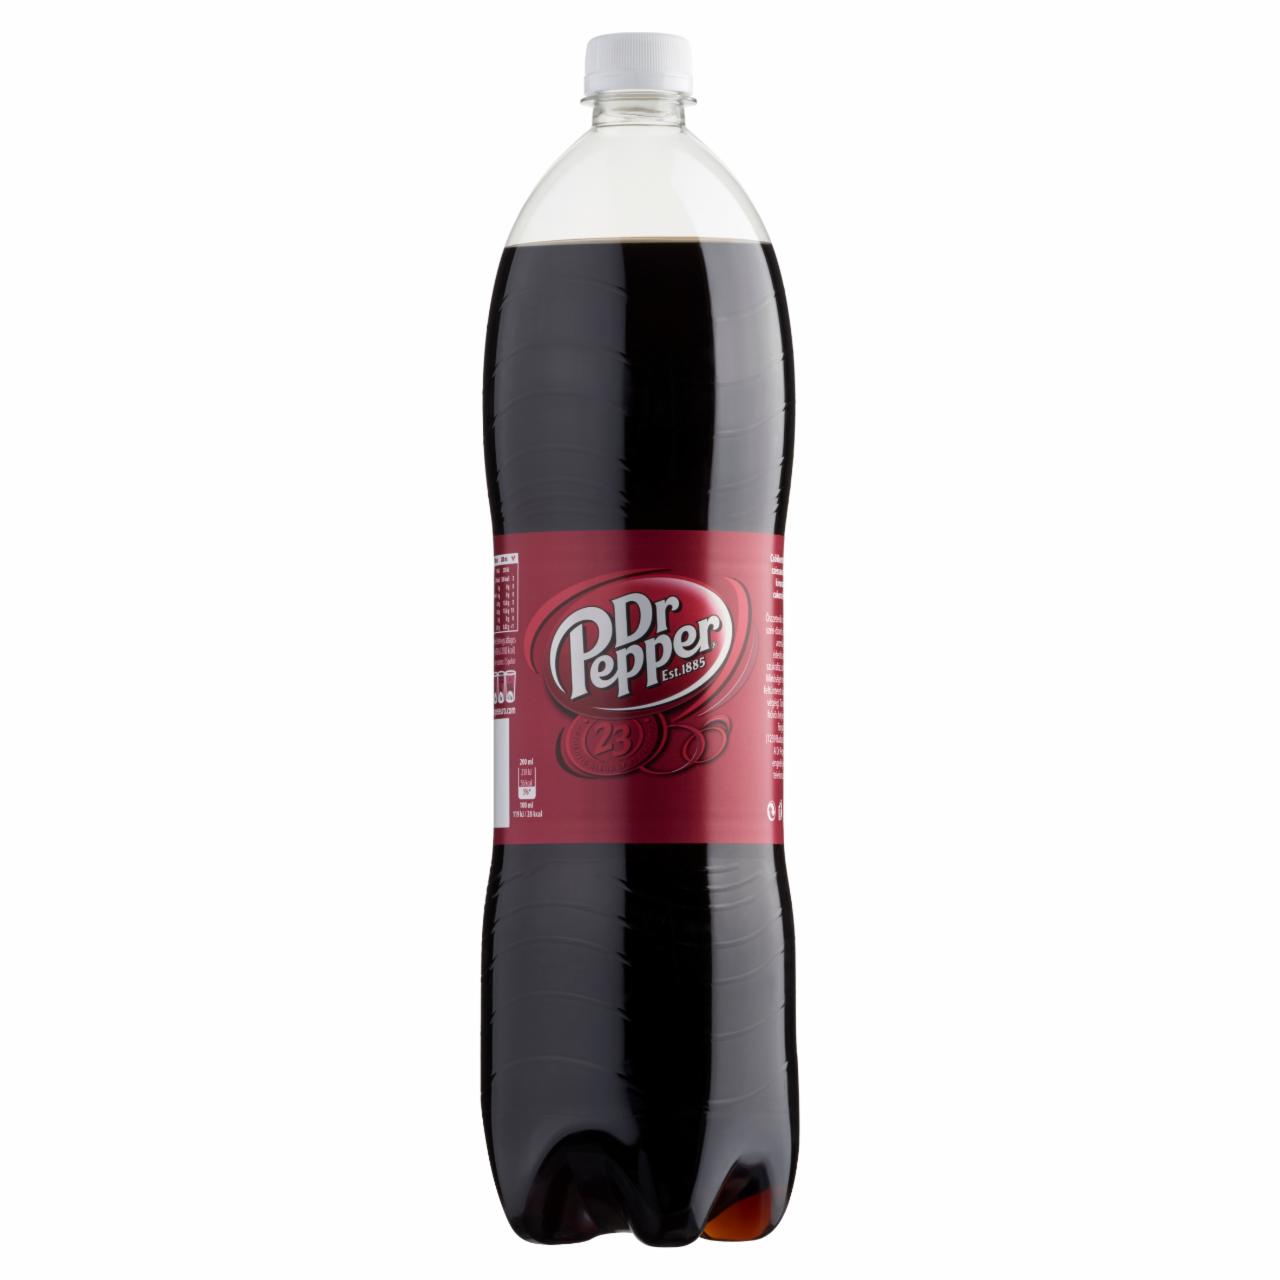 Képek - Dr Pepper csökkentett energiatartalmú szénsavas üdítőital növényi kivonatok ízesítésével 1,5 l